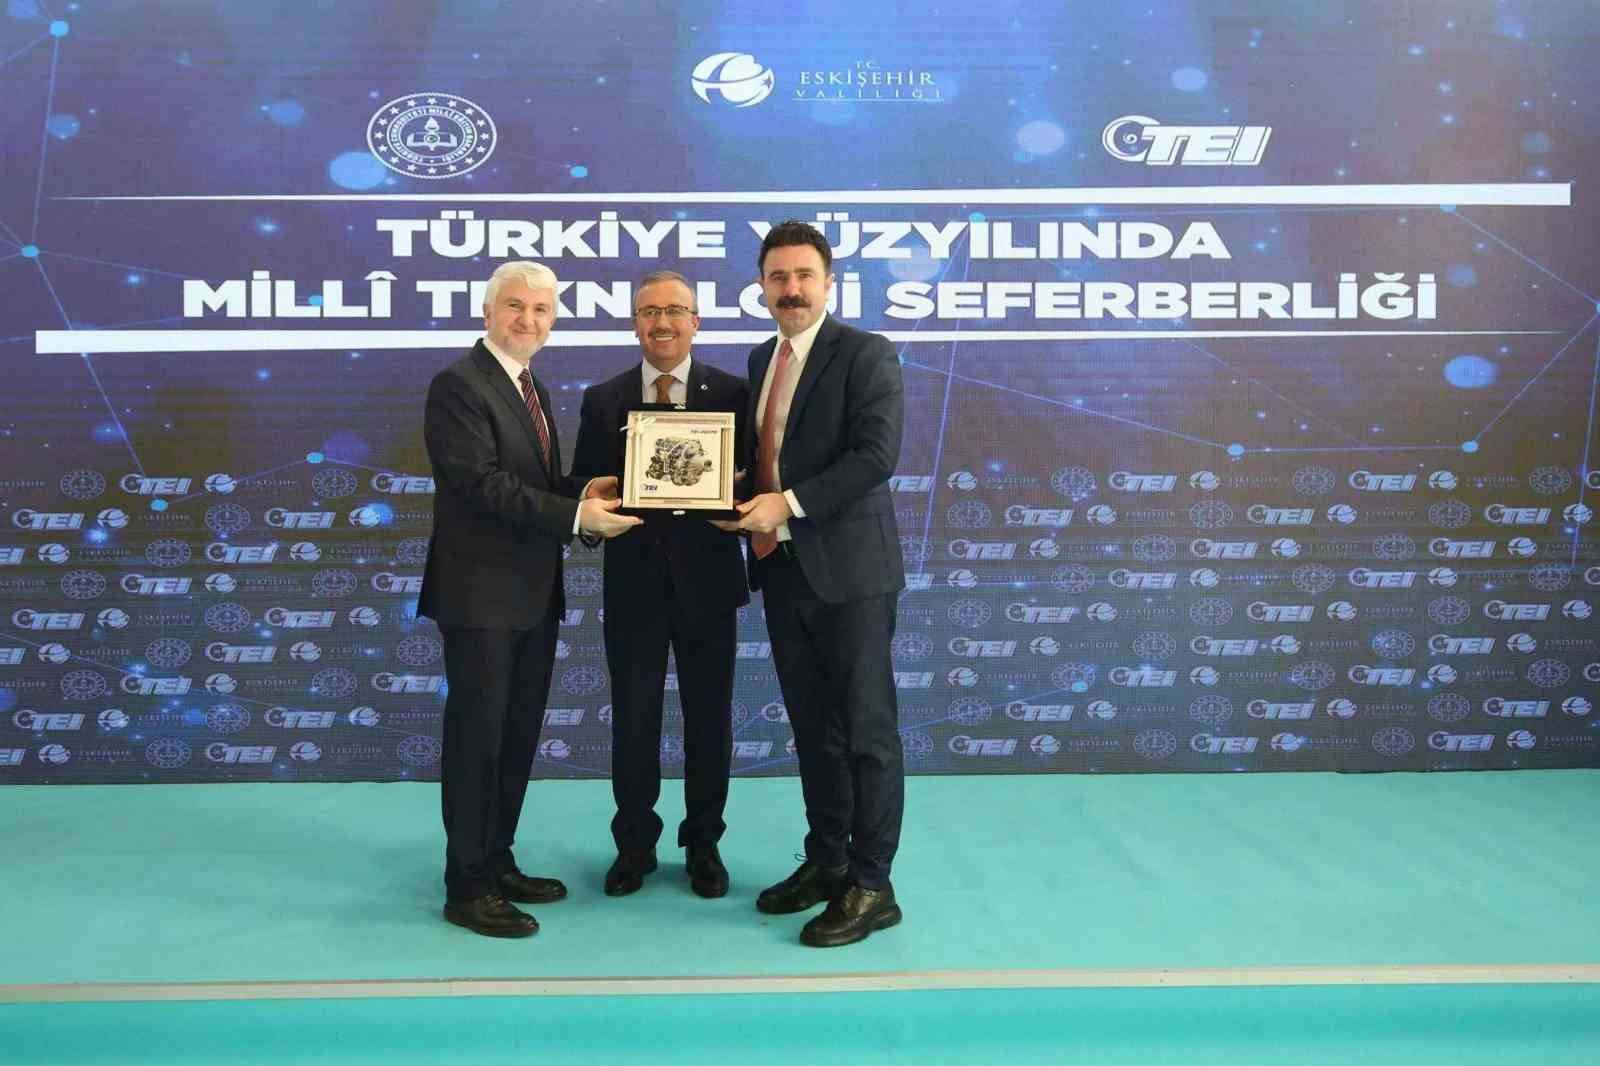 Türk Malları Haftası’nda millî motorlar tanıtıldı